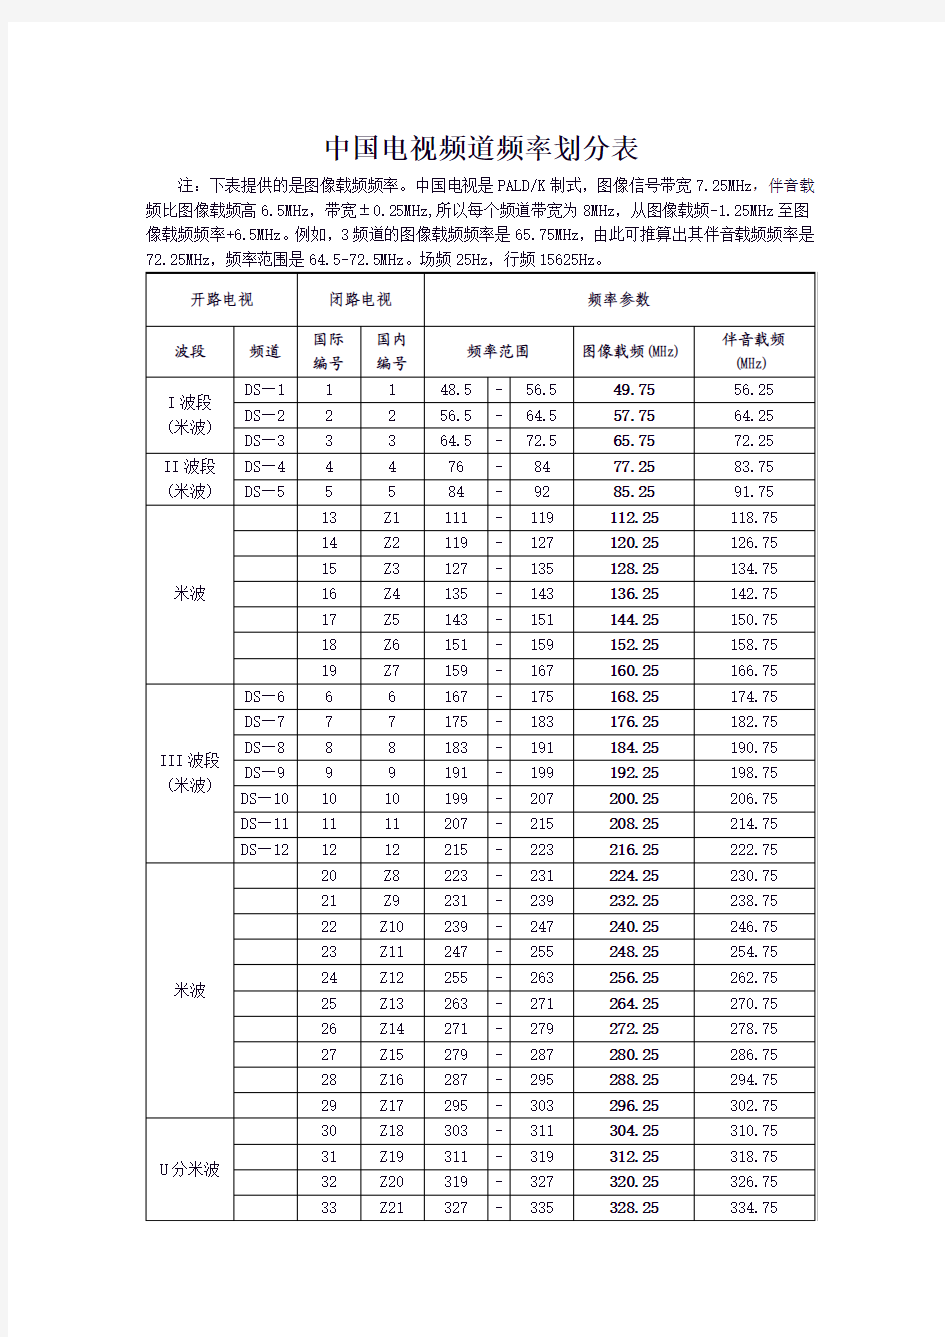 中国电视频道频率划分表